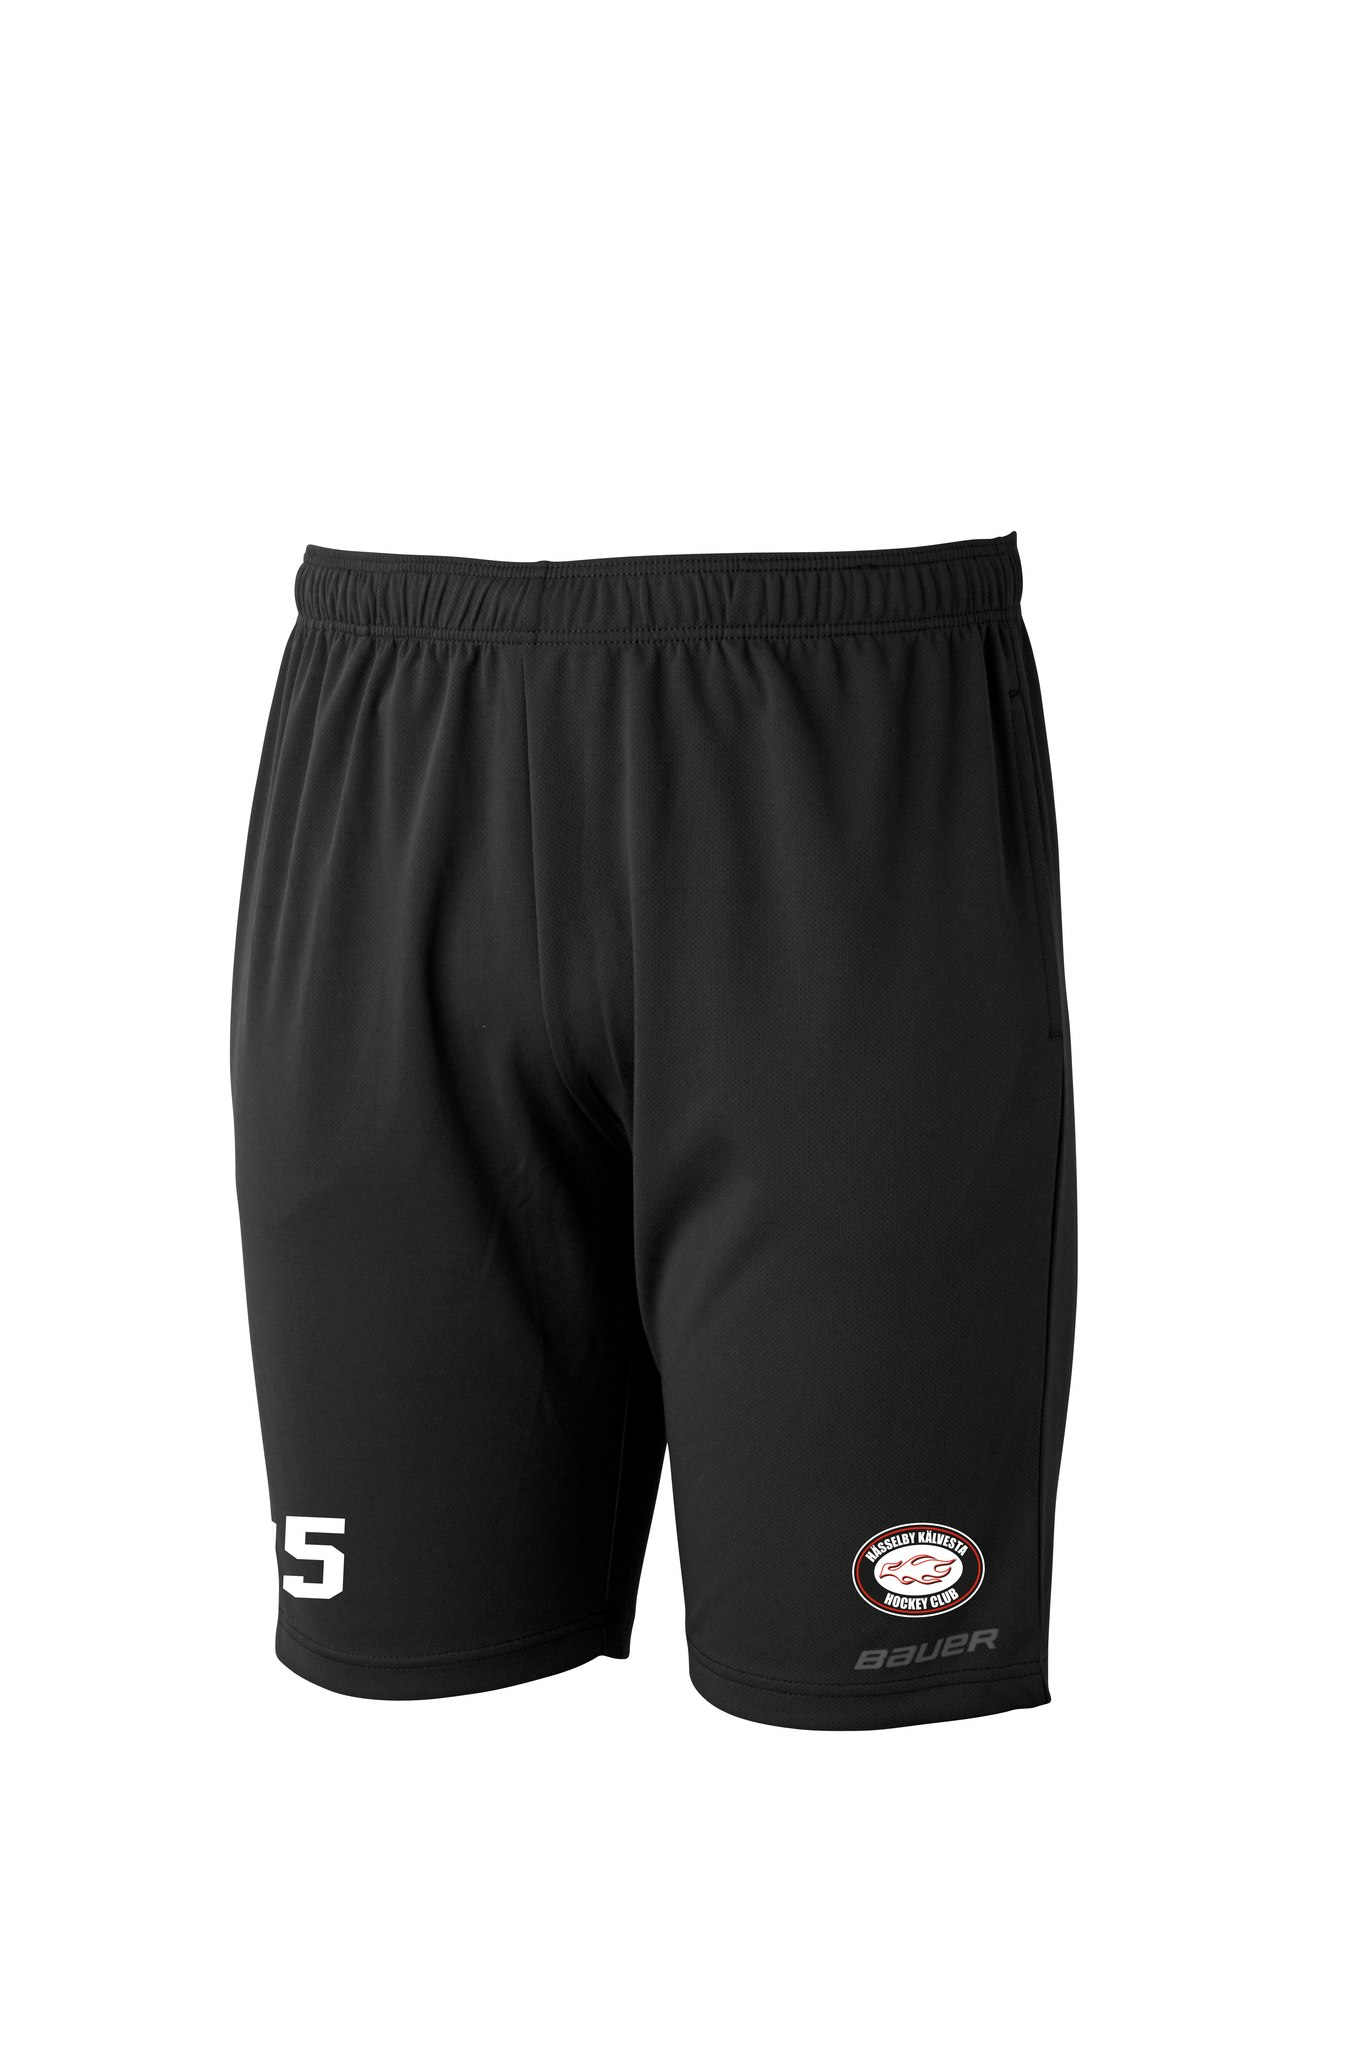 Bauer core athletic shorts Sr, HKHC